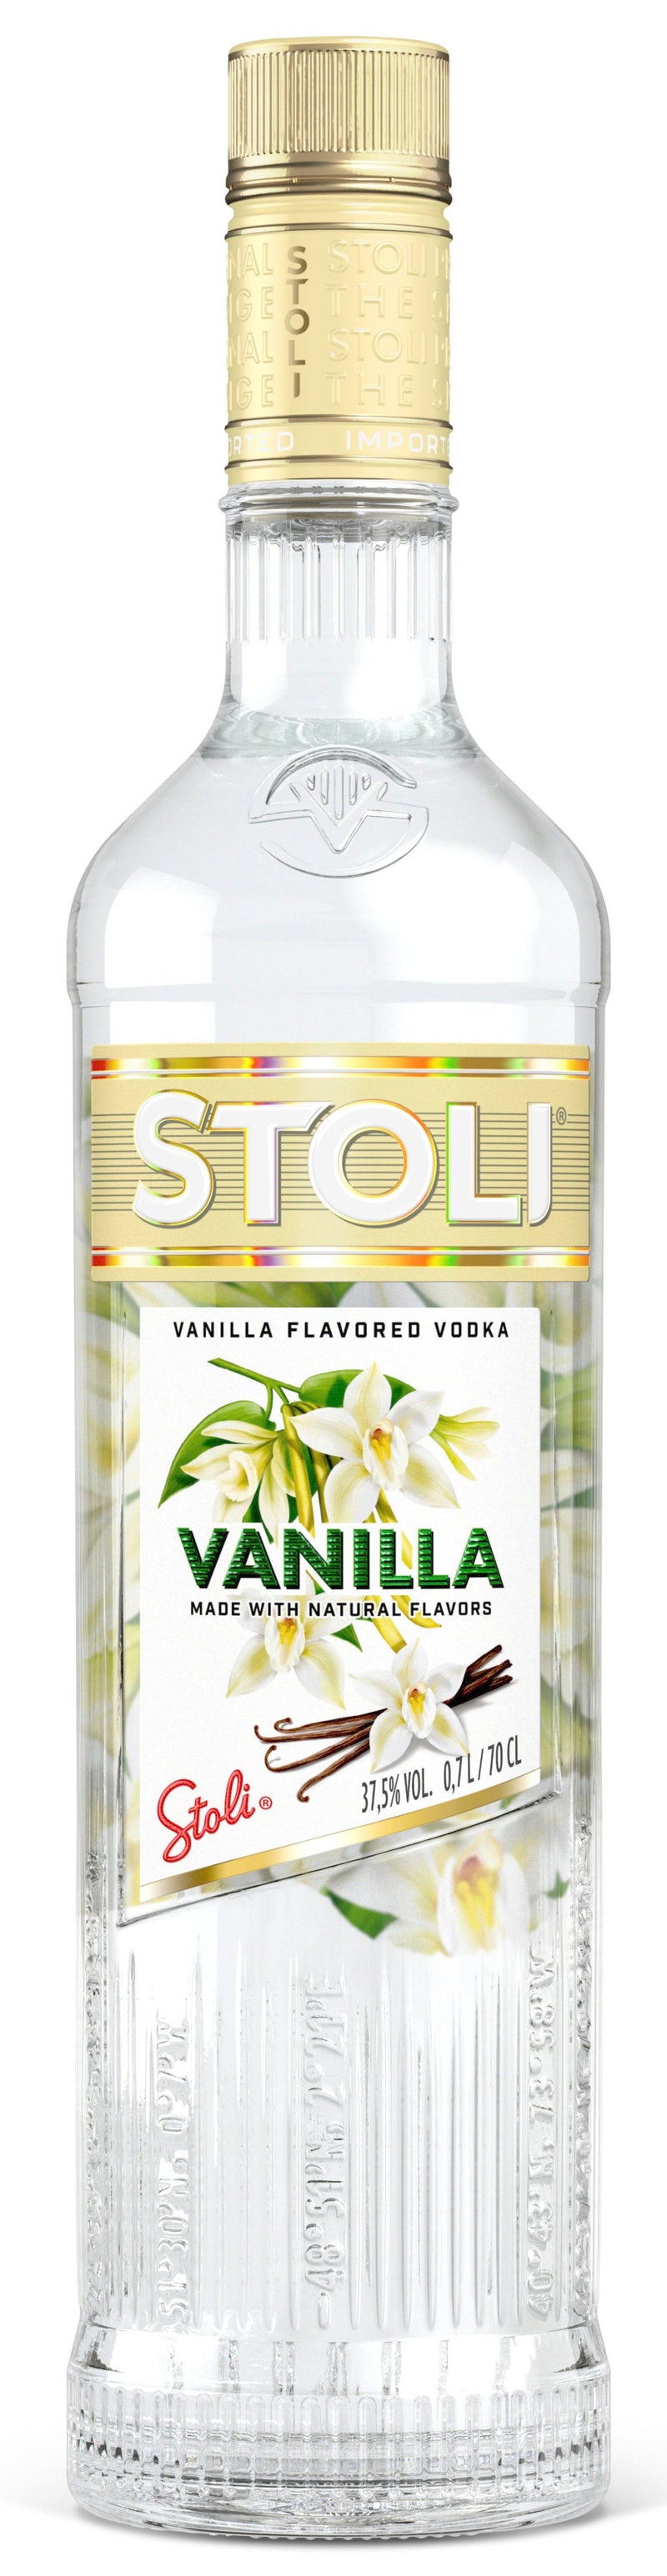 Stolichnaya Vanilla Vodka 70cl